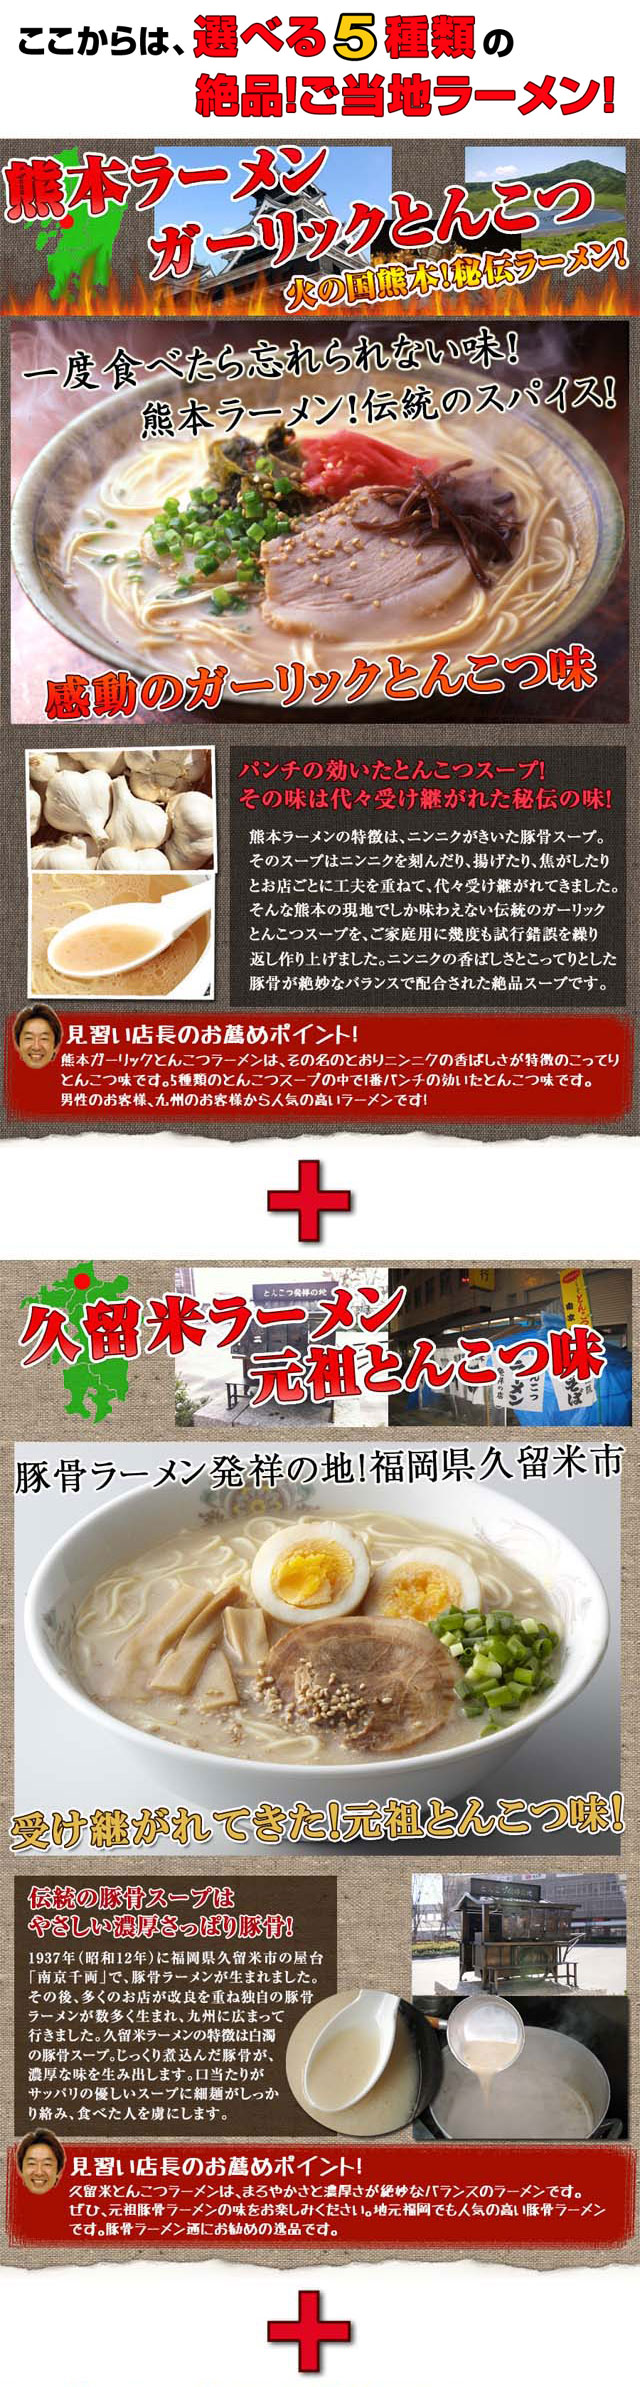 ショッピング大特価祭 大人気 九州博多 豚骨ラーメンセット10種類